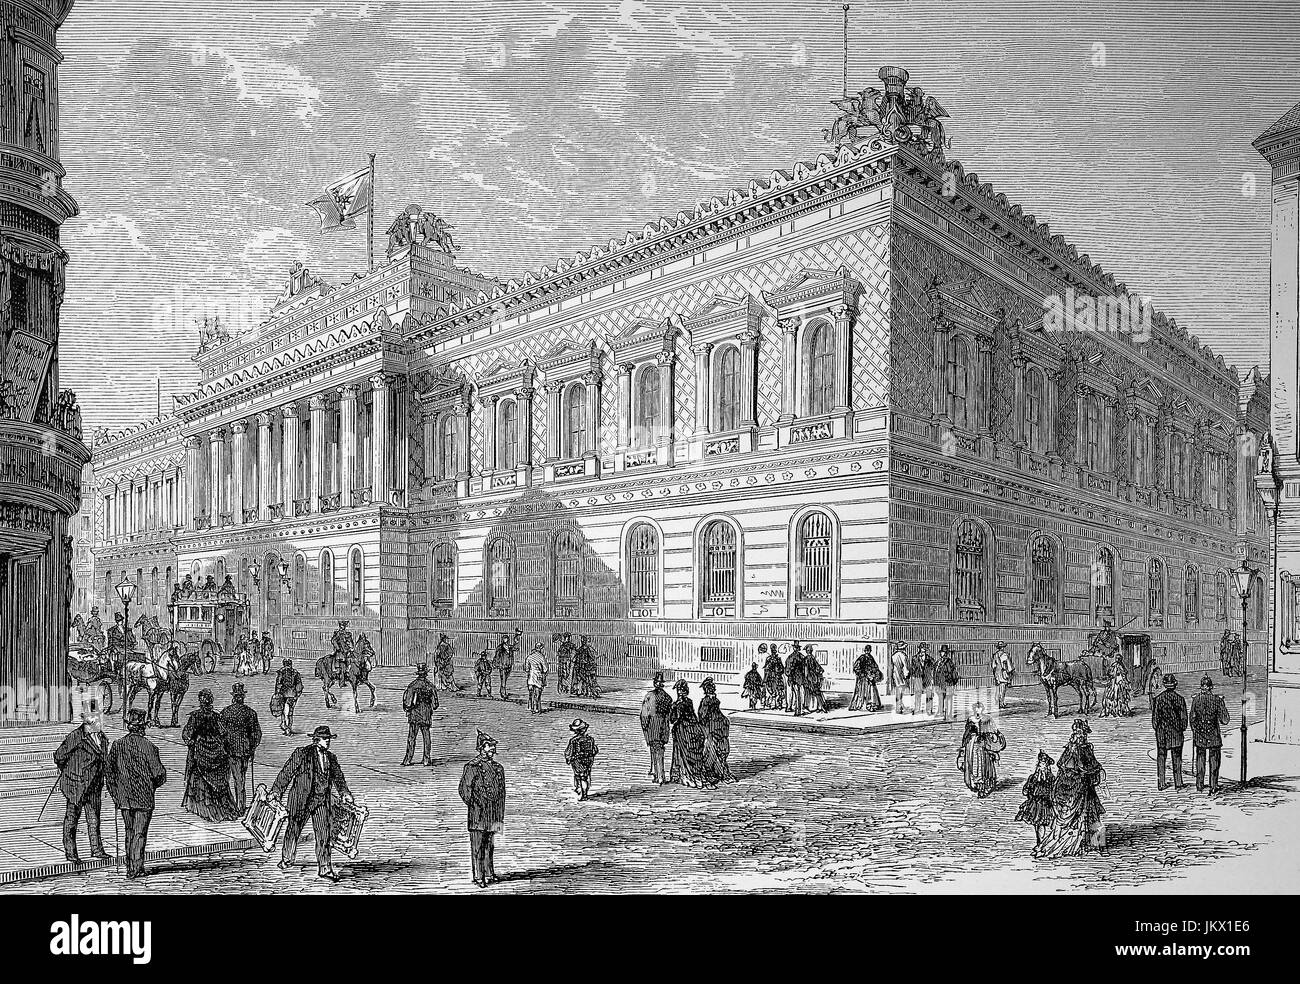 Amélioré : numérique, l'édifice de la Reichsbank à Berlin, Allemagne, illustration, la Reichsbank était la banque centrale de l'Allemagne de 1876 jusqu'en 1945, la publication de l'année 1882 Banque D'Images